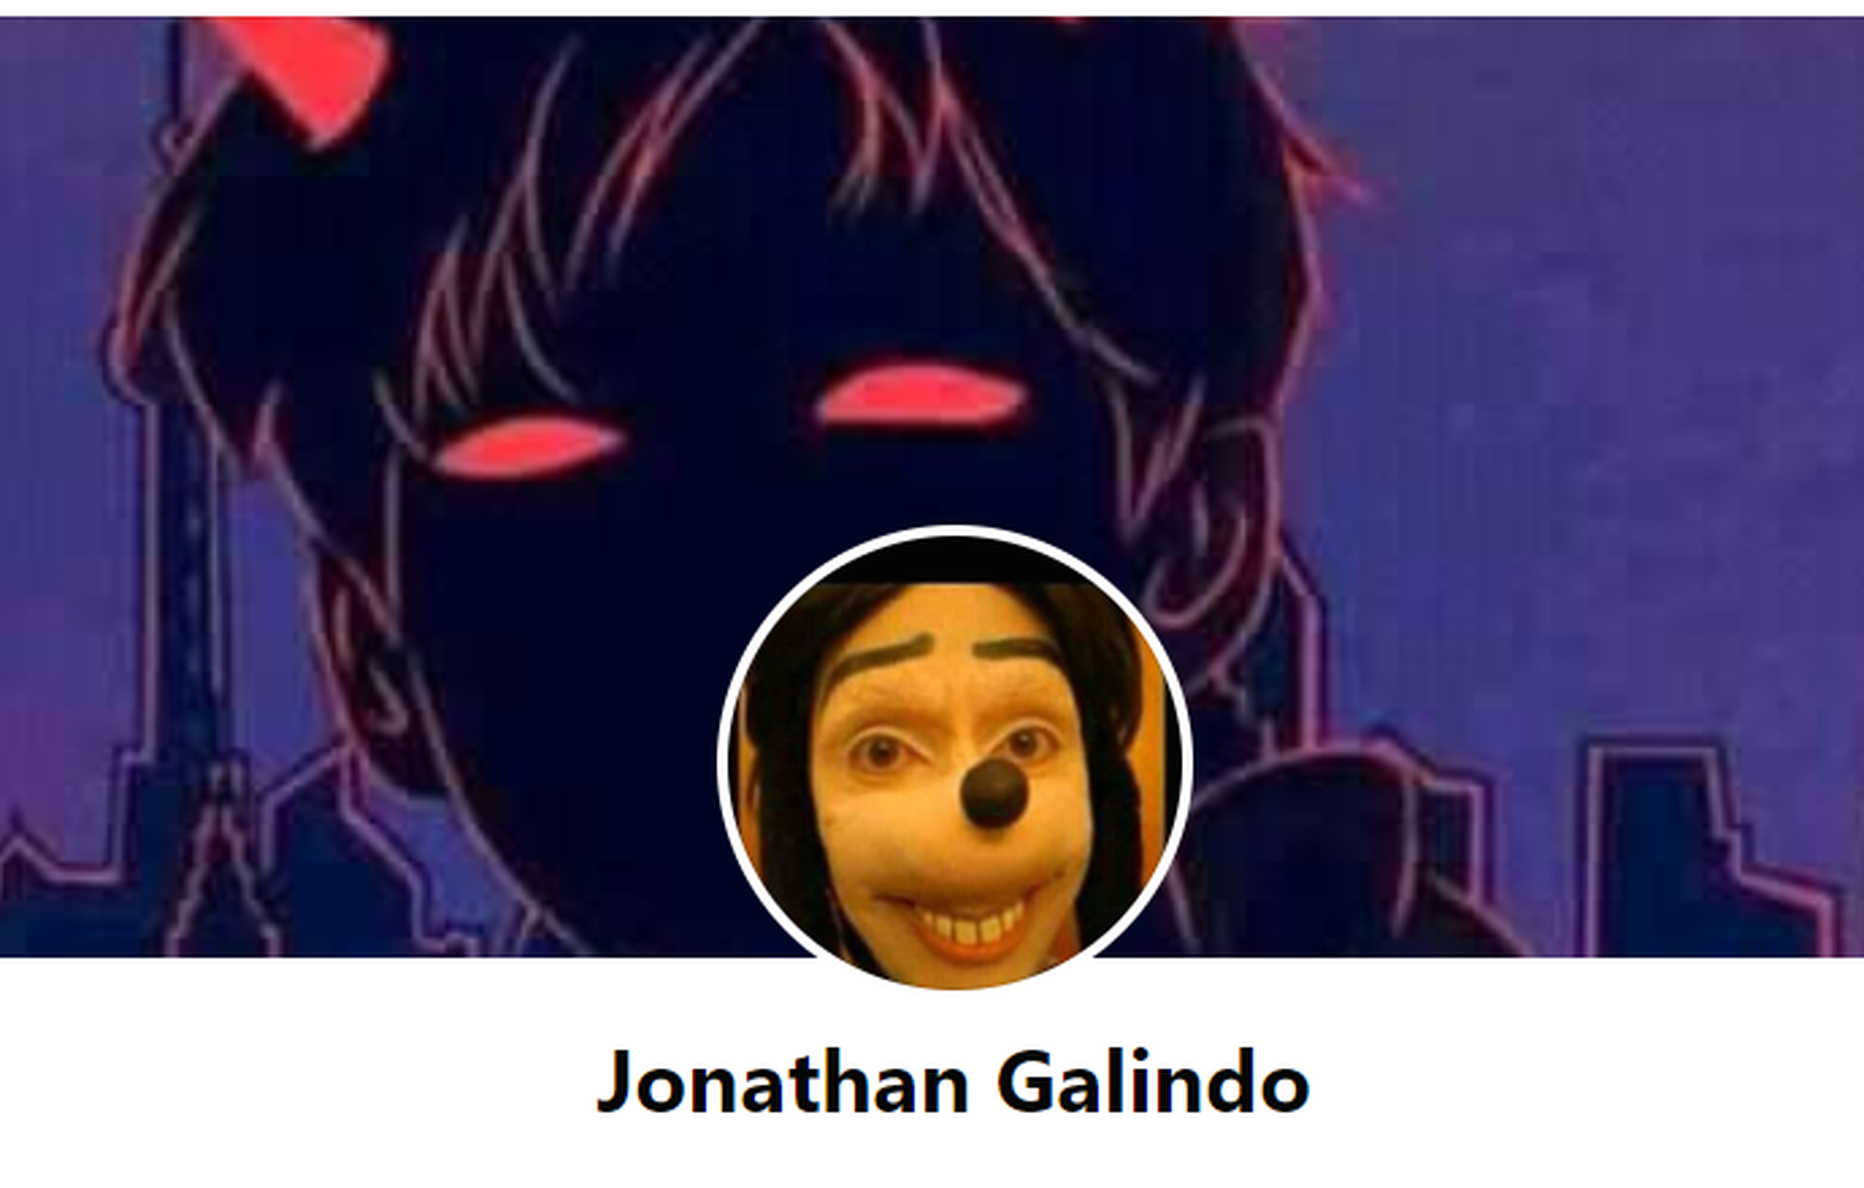 Facebookis on Jonathan Galindo nimelisi kontosid mitmeid